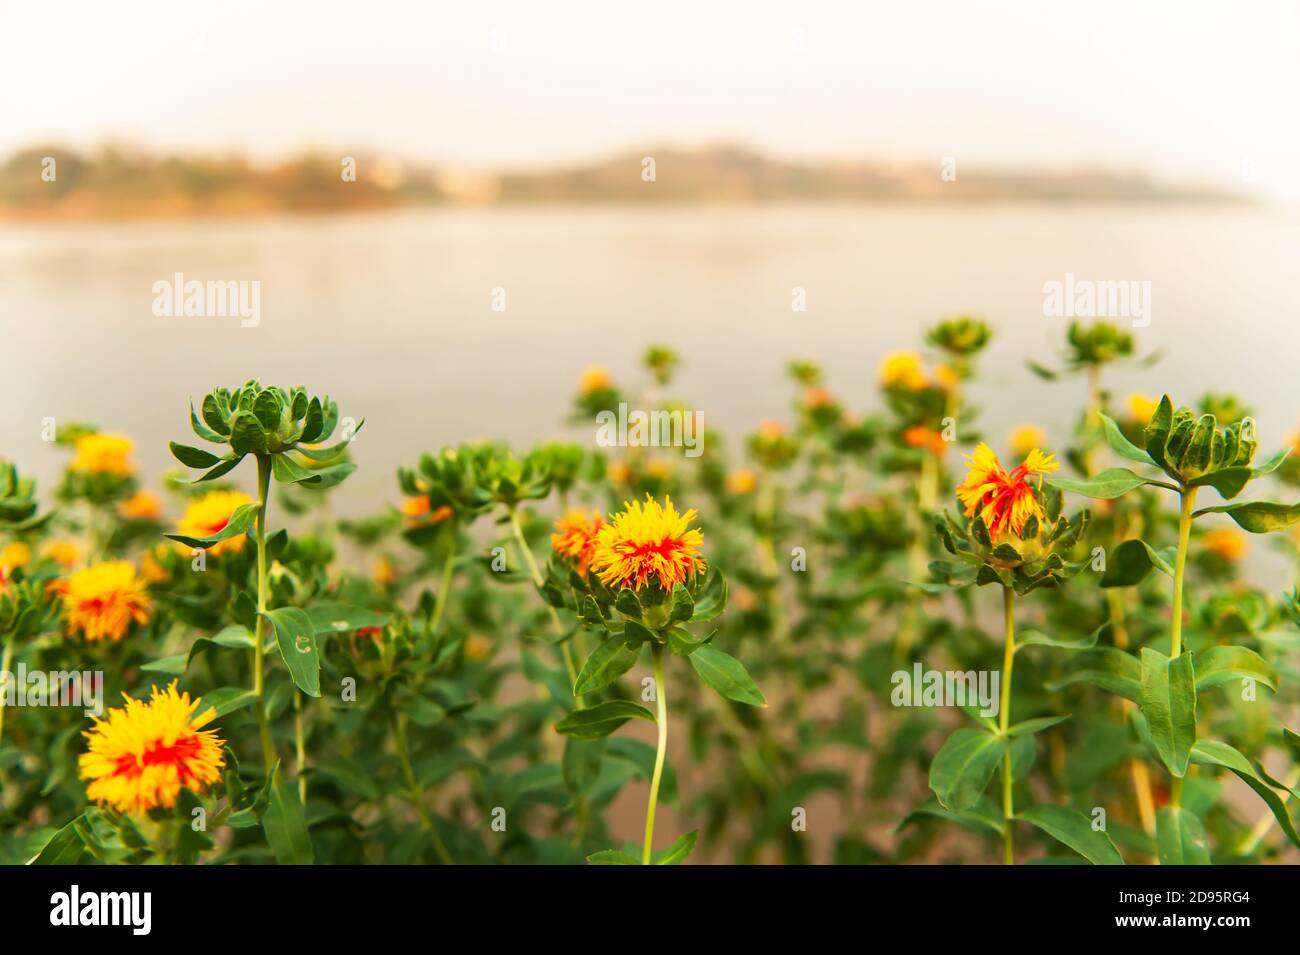 Campo fiorito di fiori gialli rossi sulla riva del fiume al tramonto, fiori gialli colorati con centro rosso sono in fiore sulla riva del fiume Mekong in estate. Foto Stock